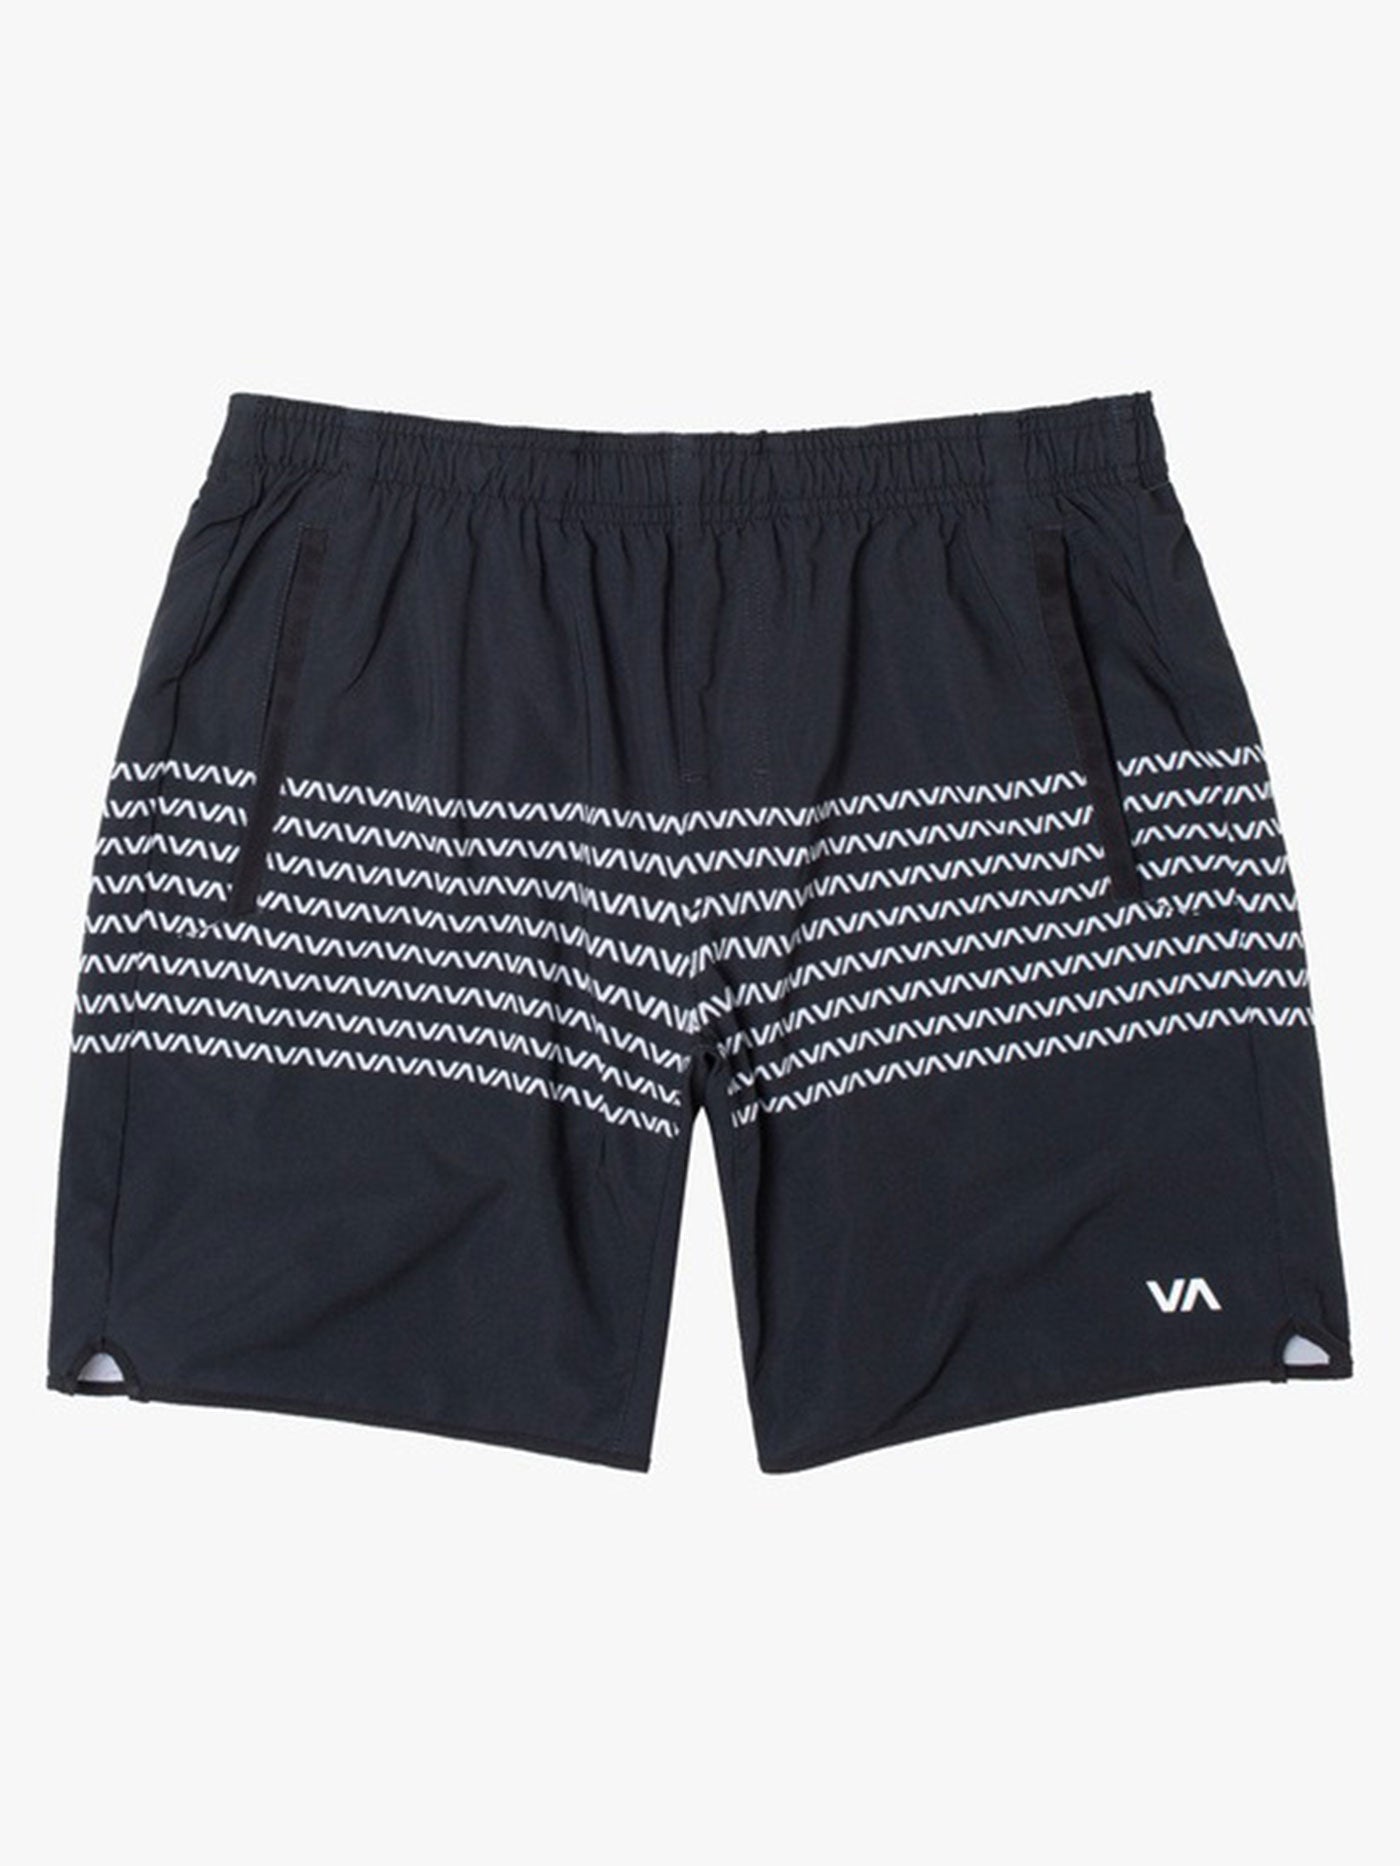 RVCA Sport Yogger Stretch Shorts